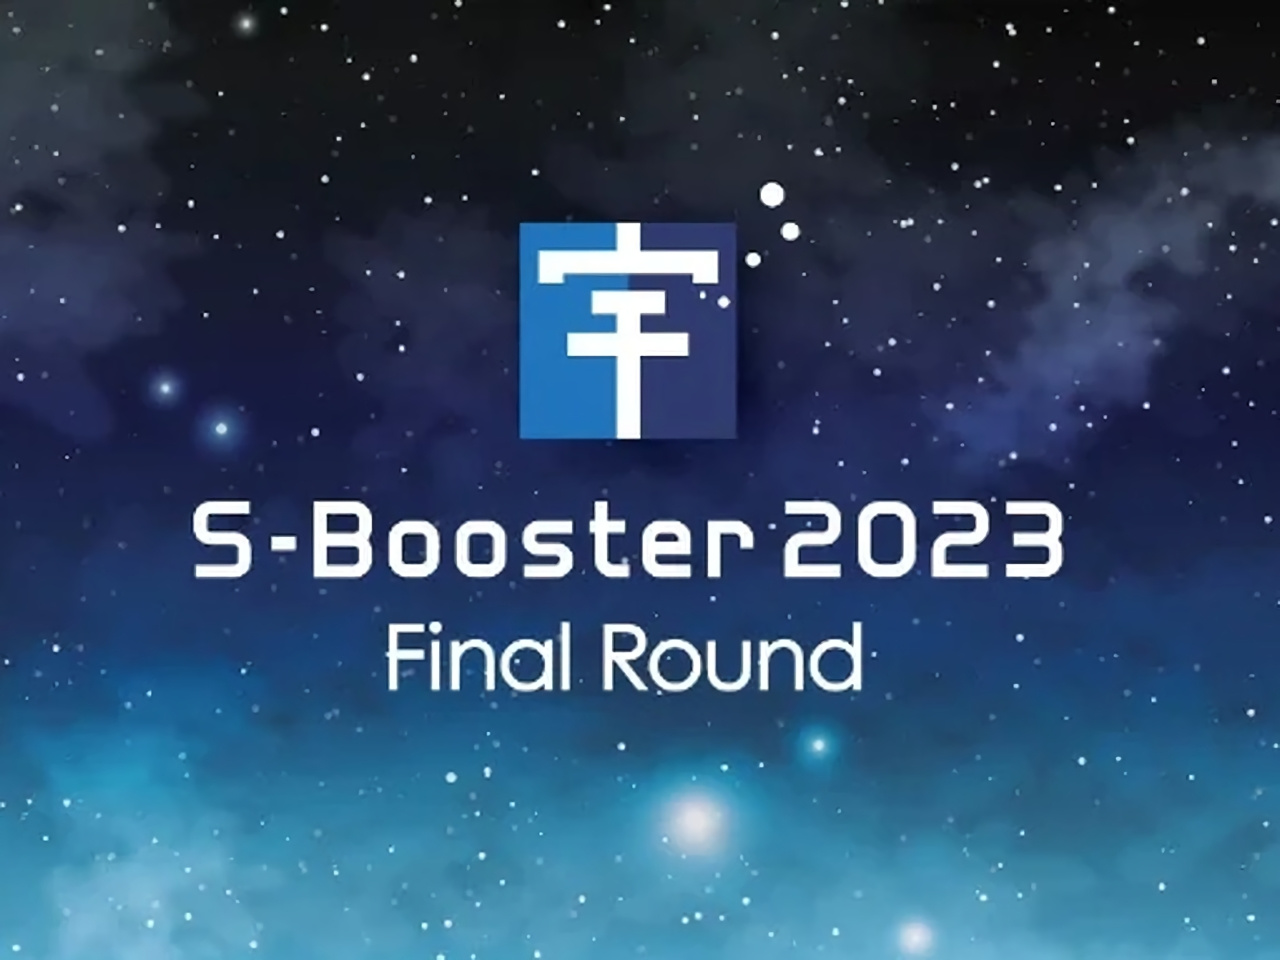 宇宙ビジネスアイデアコンテスト「S-Booster」最終選考会、11月16日に開催